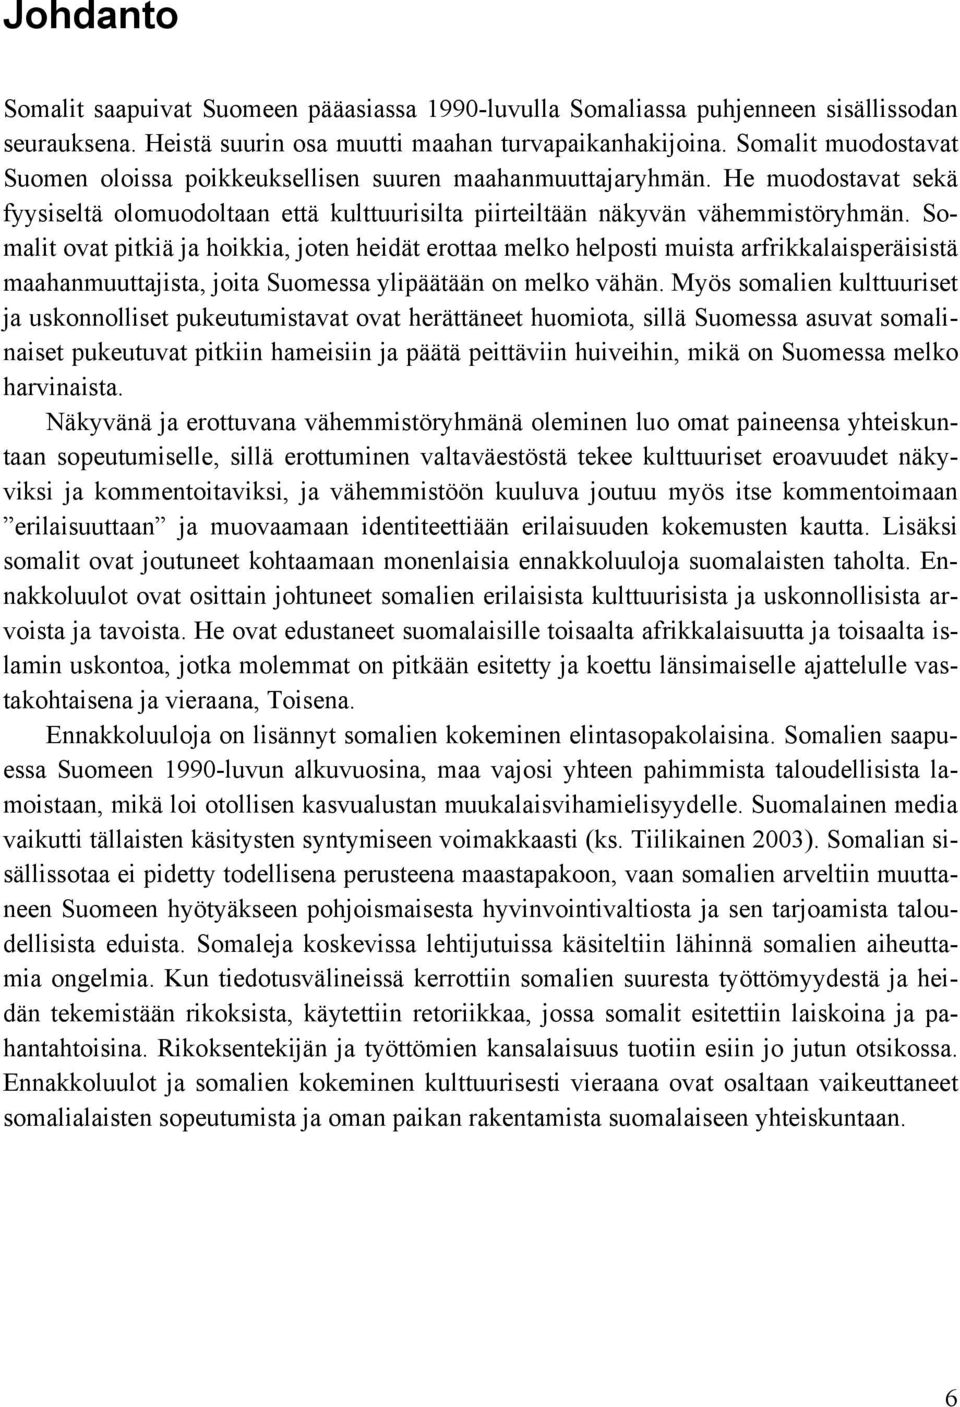 Somalit ovat pitkiä ja hoikkia, joten heidät erottaa melko helposti muista arfrikkalaisperäisistä maahanmuuttajista, joita Suomessa ylipäätään on melko vähän.